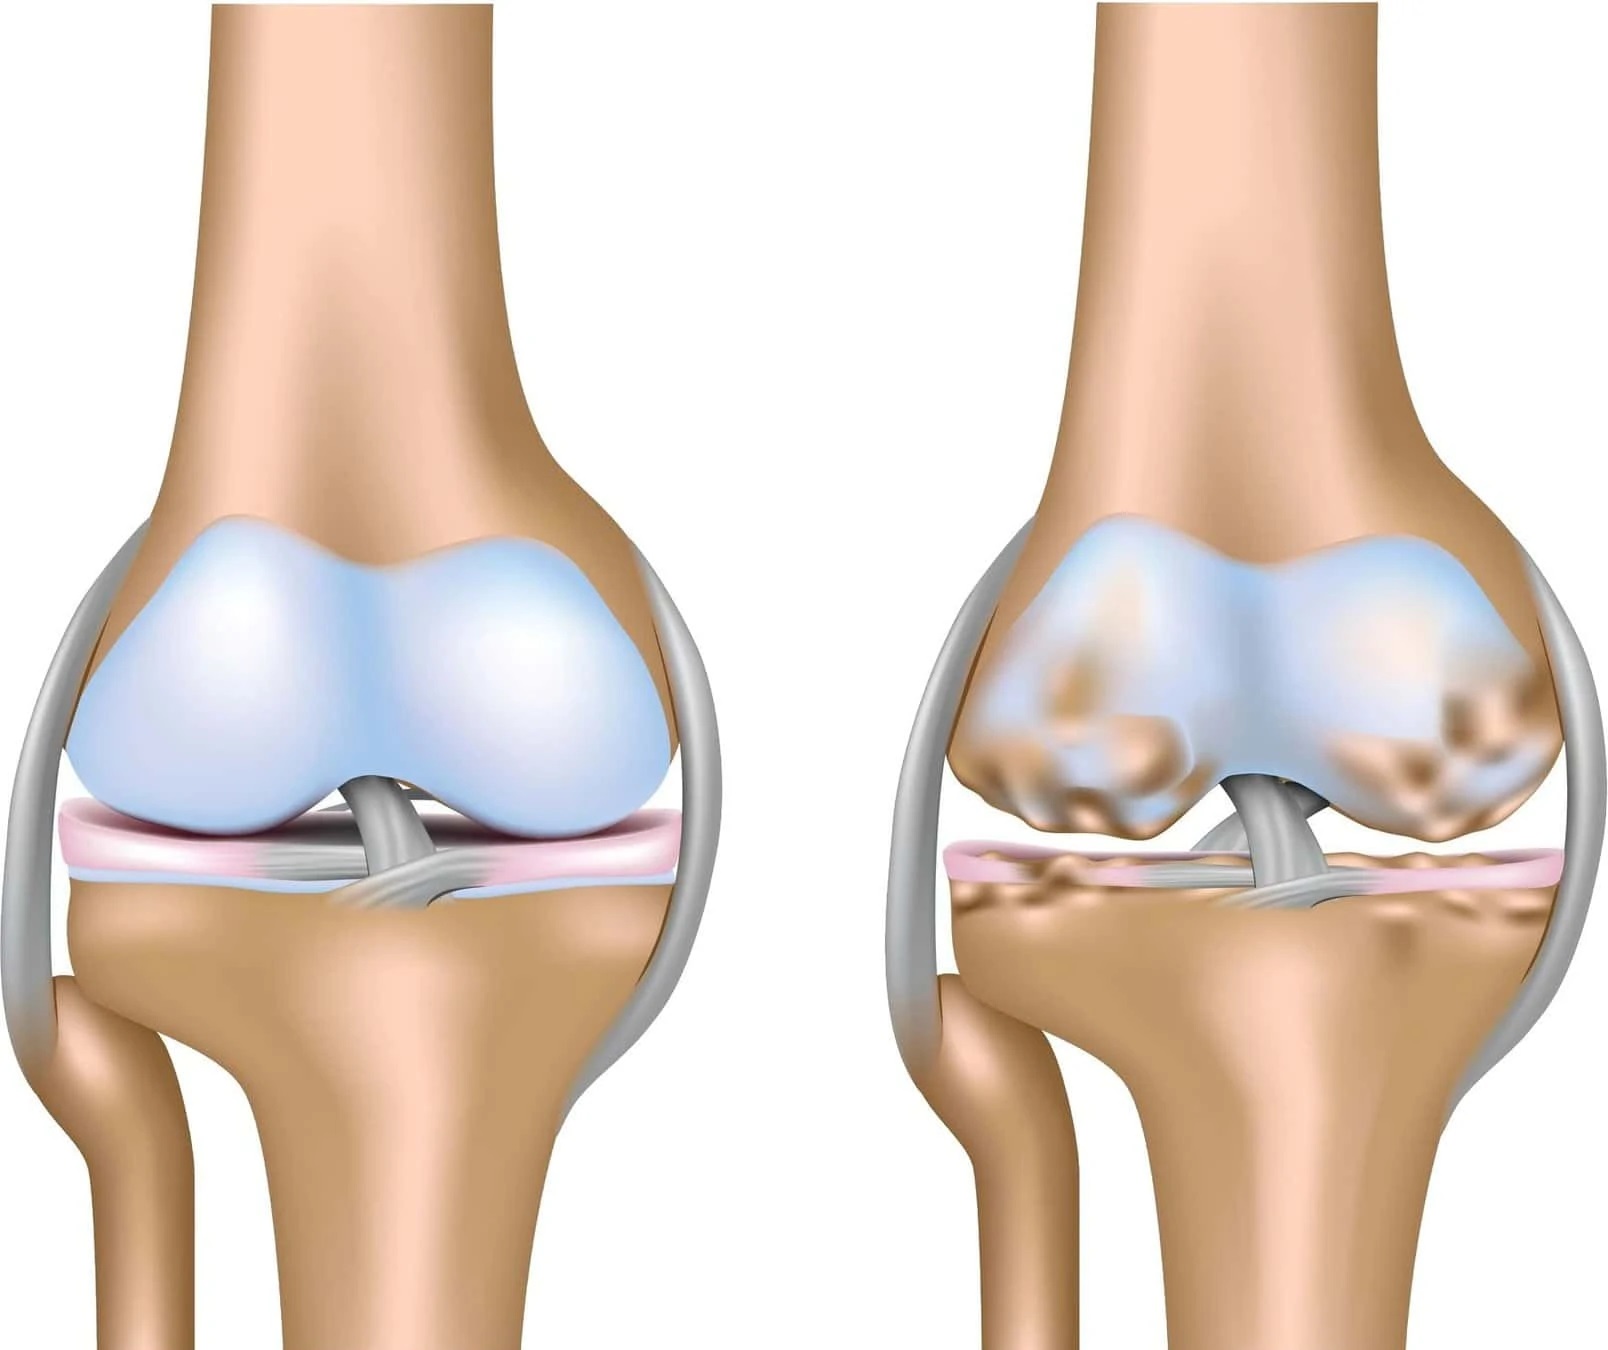 Osteoartrita genunchiului: tratament nechirugical prin exercitii la domiciliu